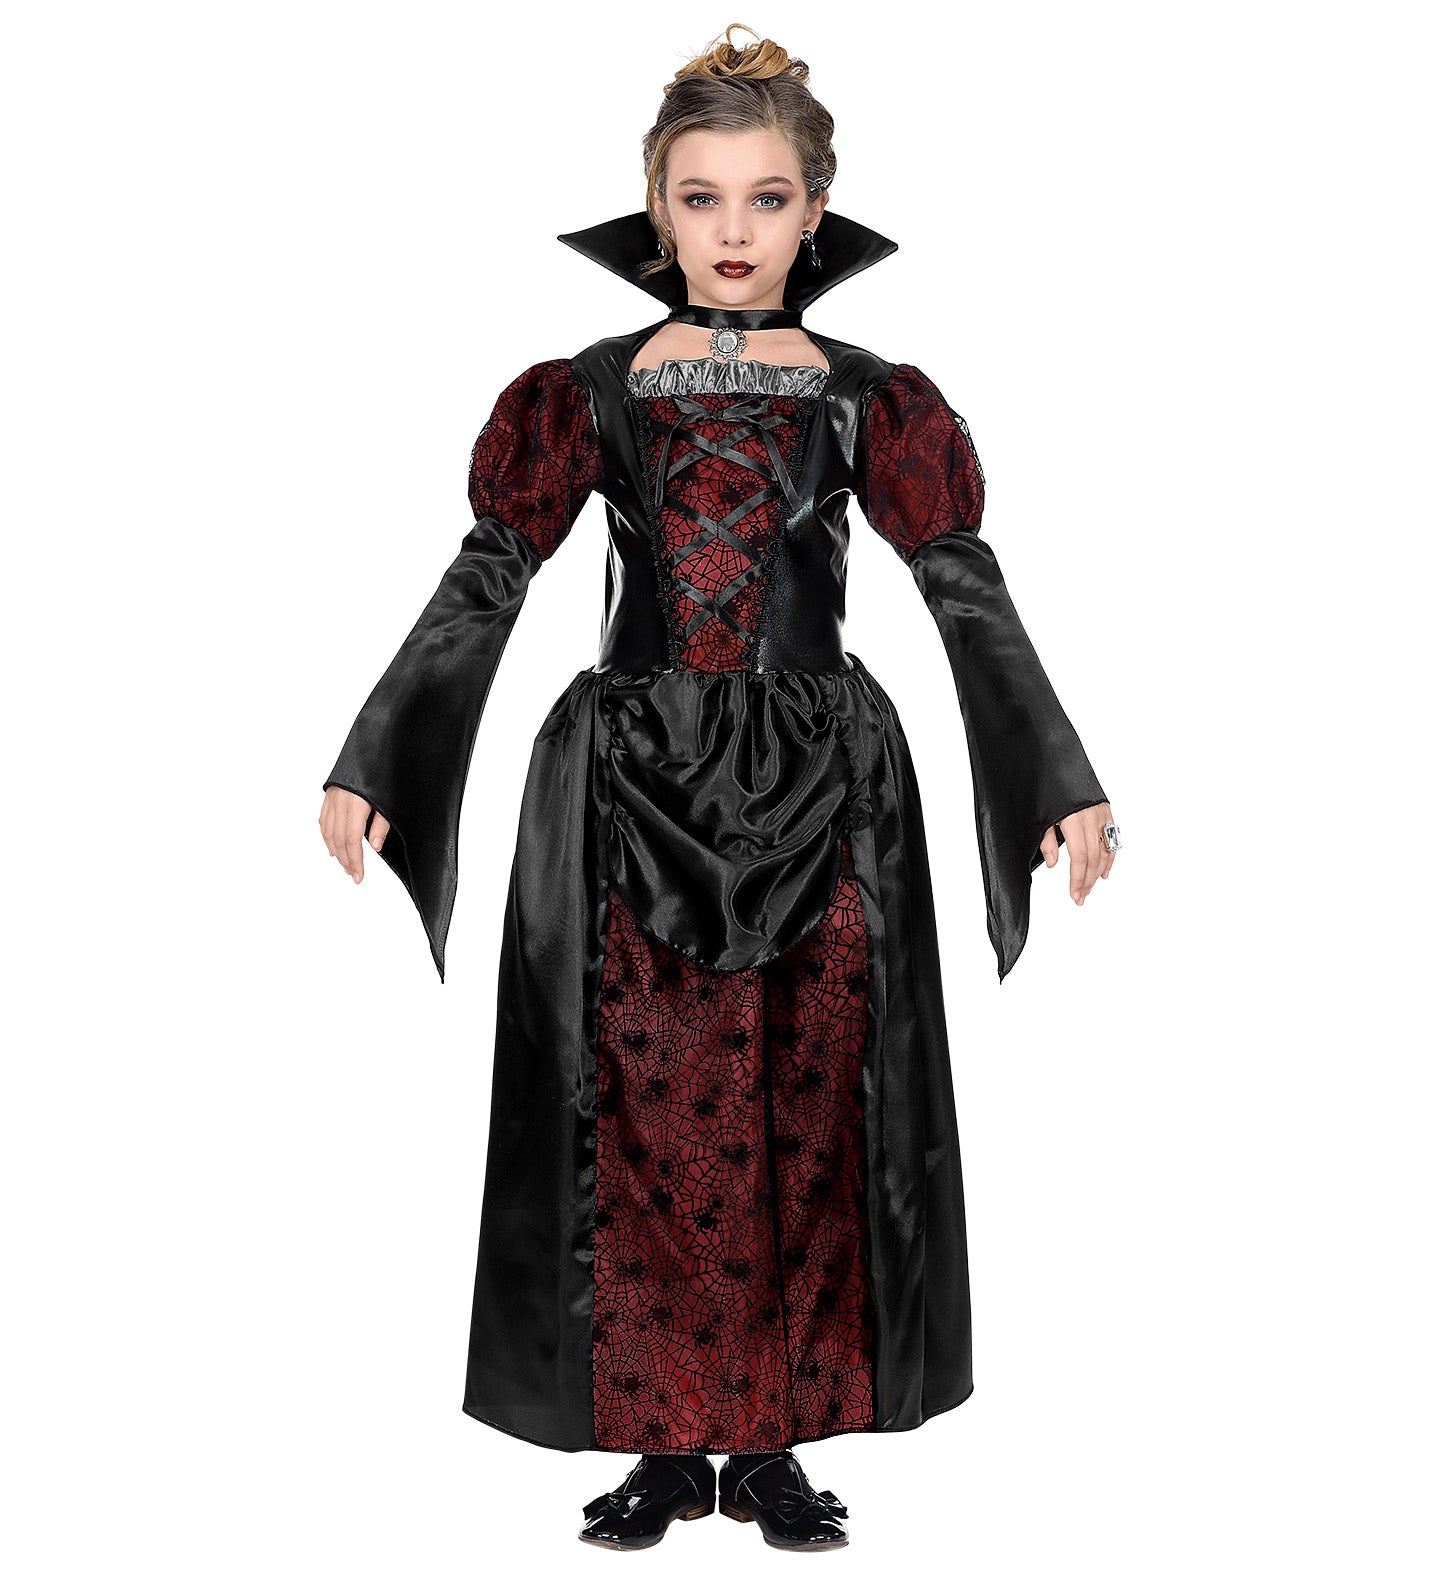 Regal Vampiress Costume Child's